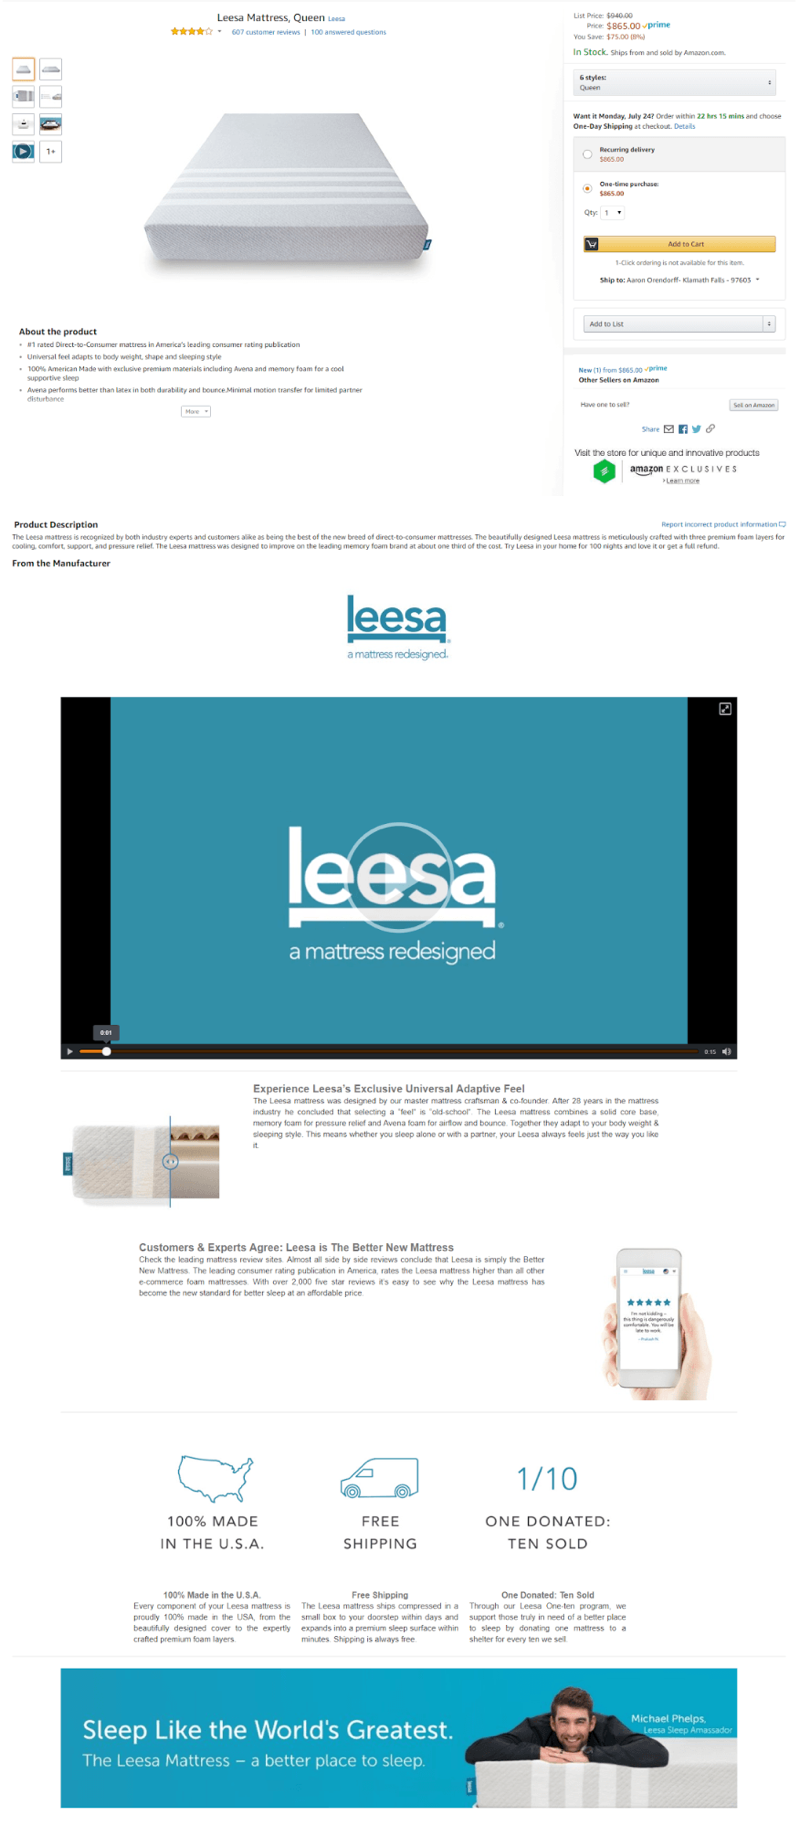 Video giới thiệu sản phẩm của Leesa trên Amazon 